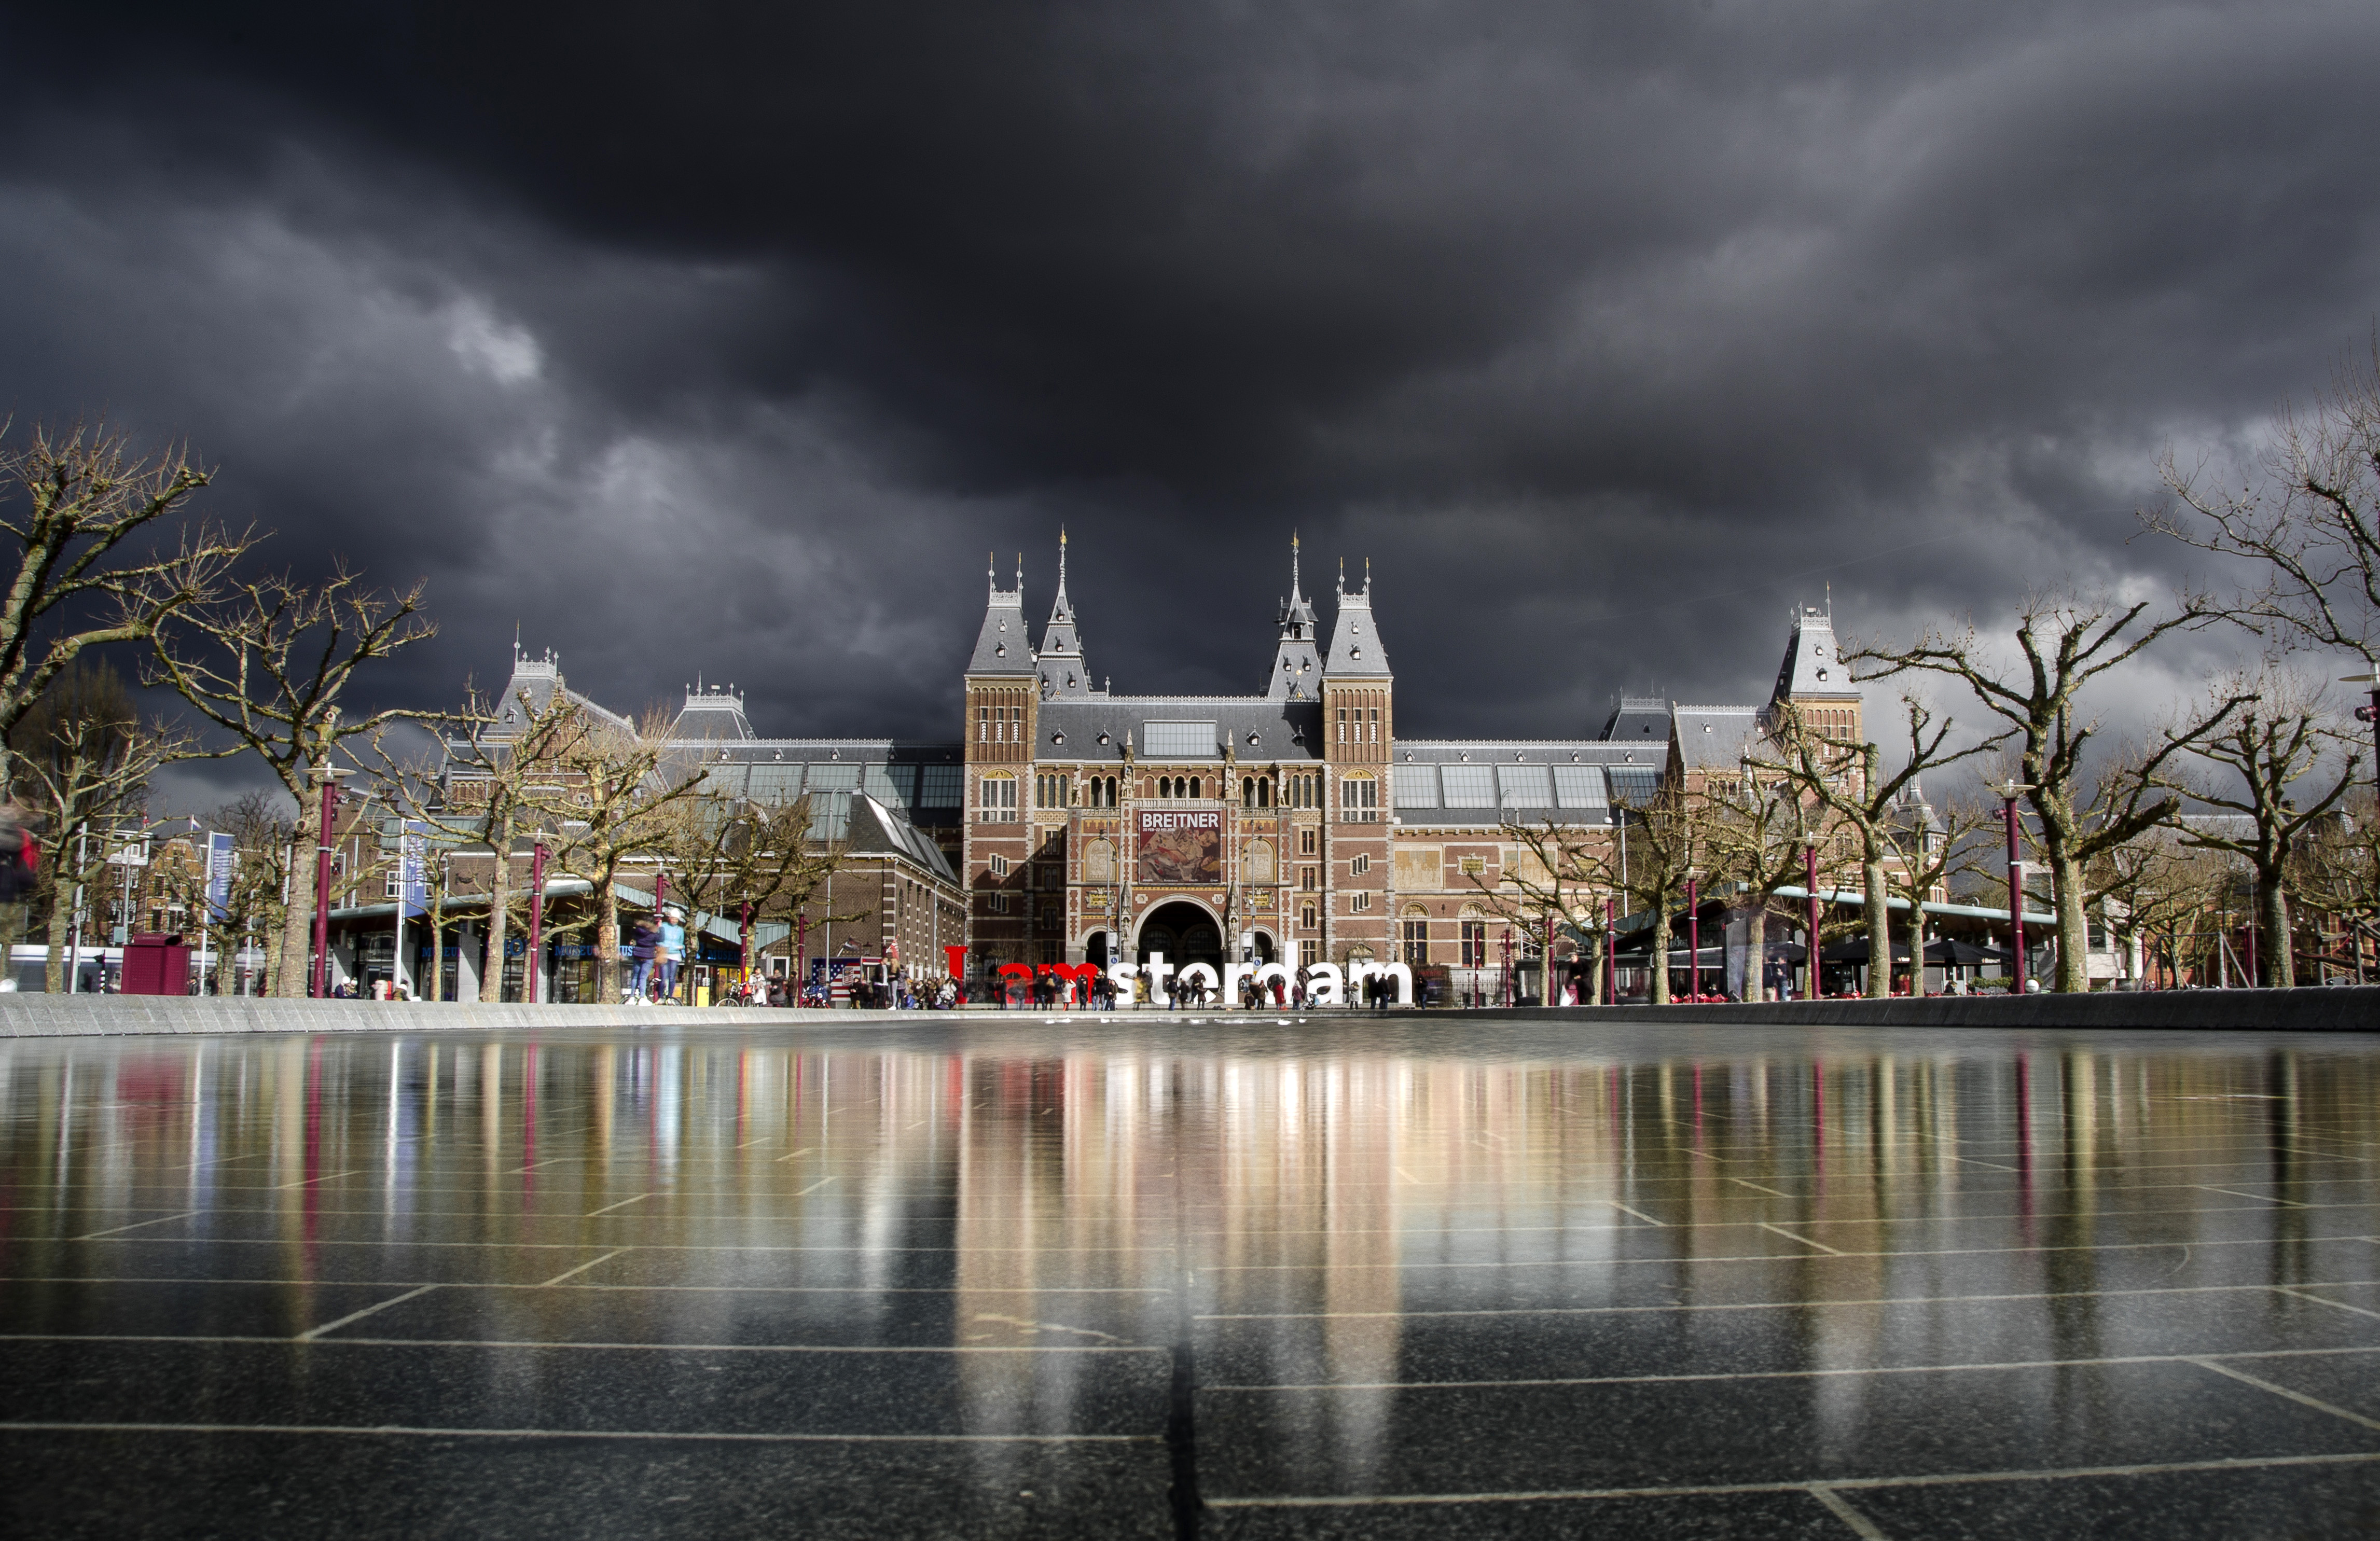 Building Architecture under dark clouds in Amsterdam, Netherlands image